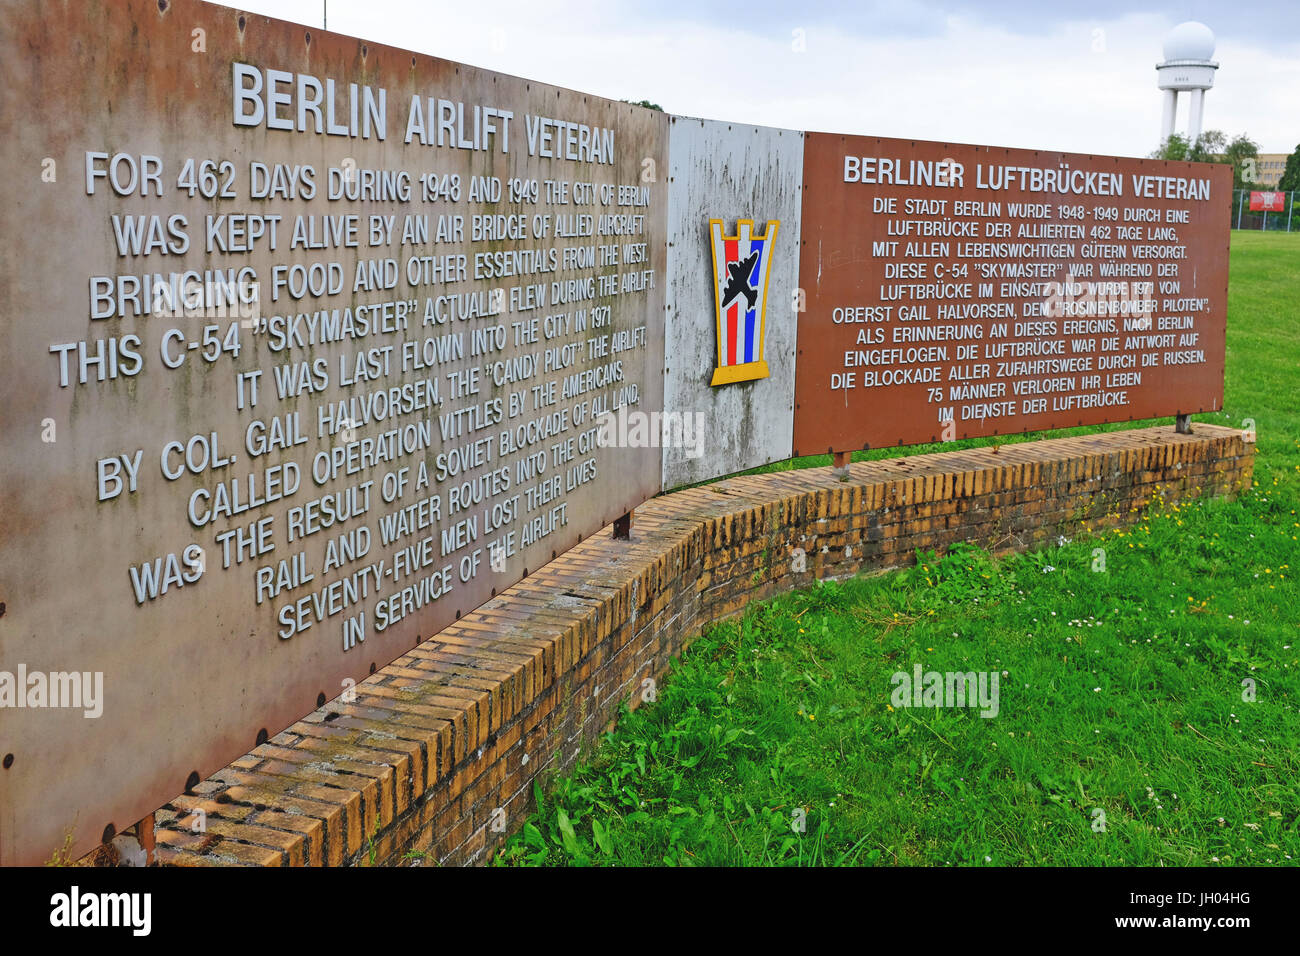 En inscription explique le Pont Aérien de Berlin et est situé sur l'ancien aérodrome Aéroport Templehof à Berlin, Allemagne maintenant un public public/espace ouvert. Banque D'Images